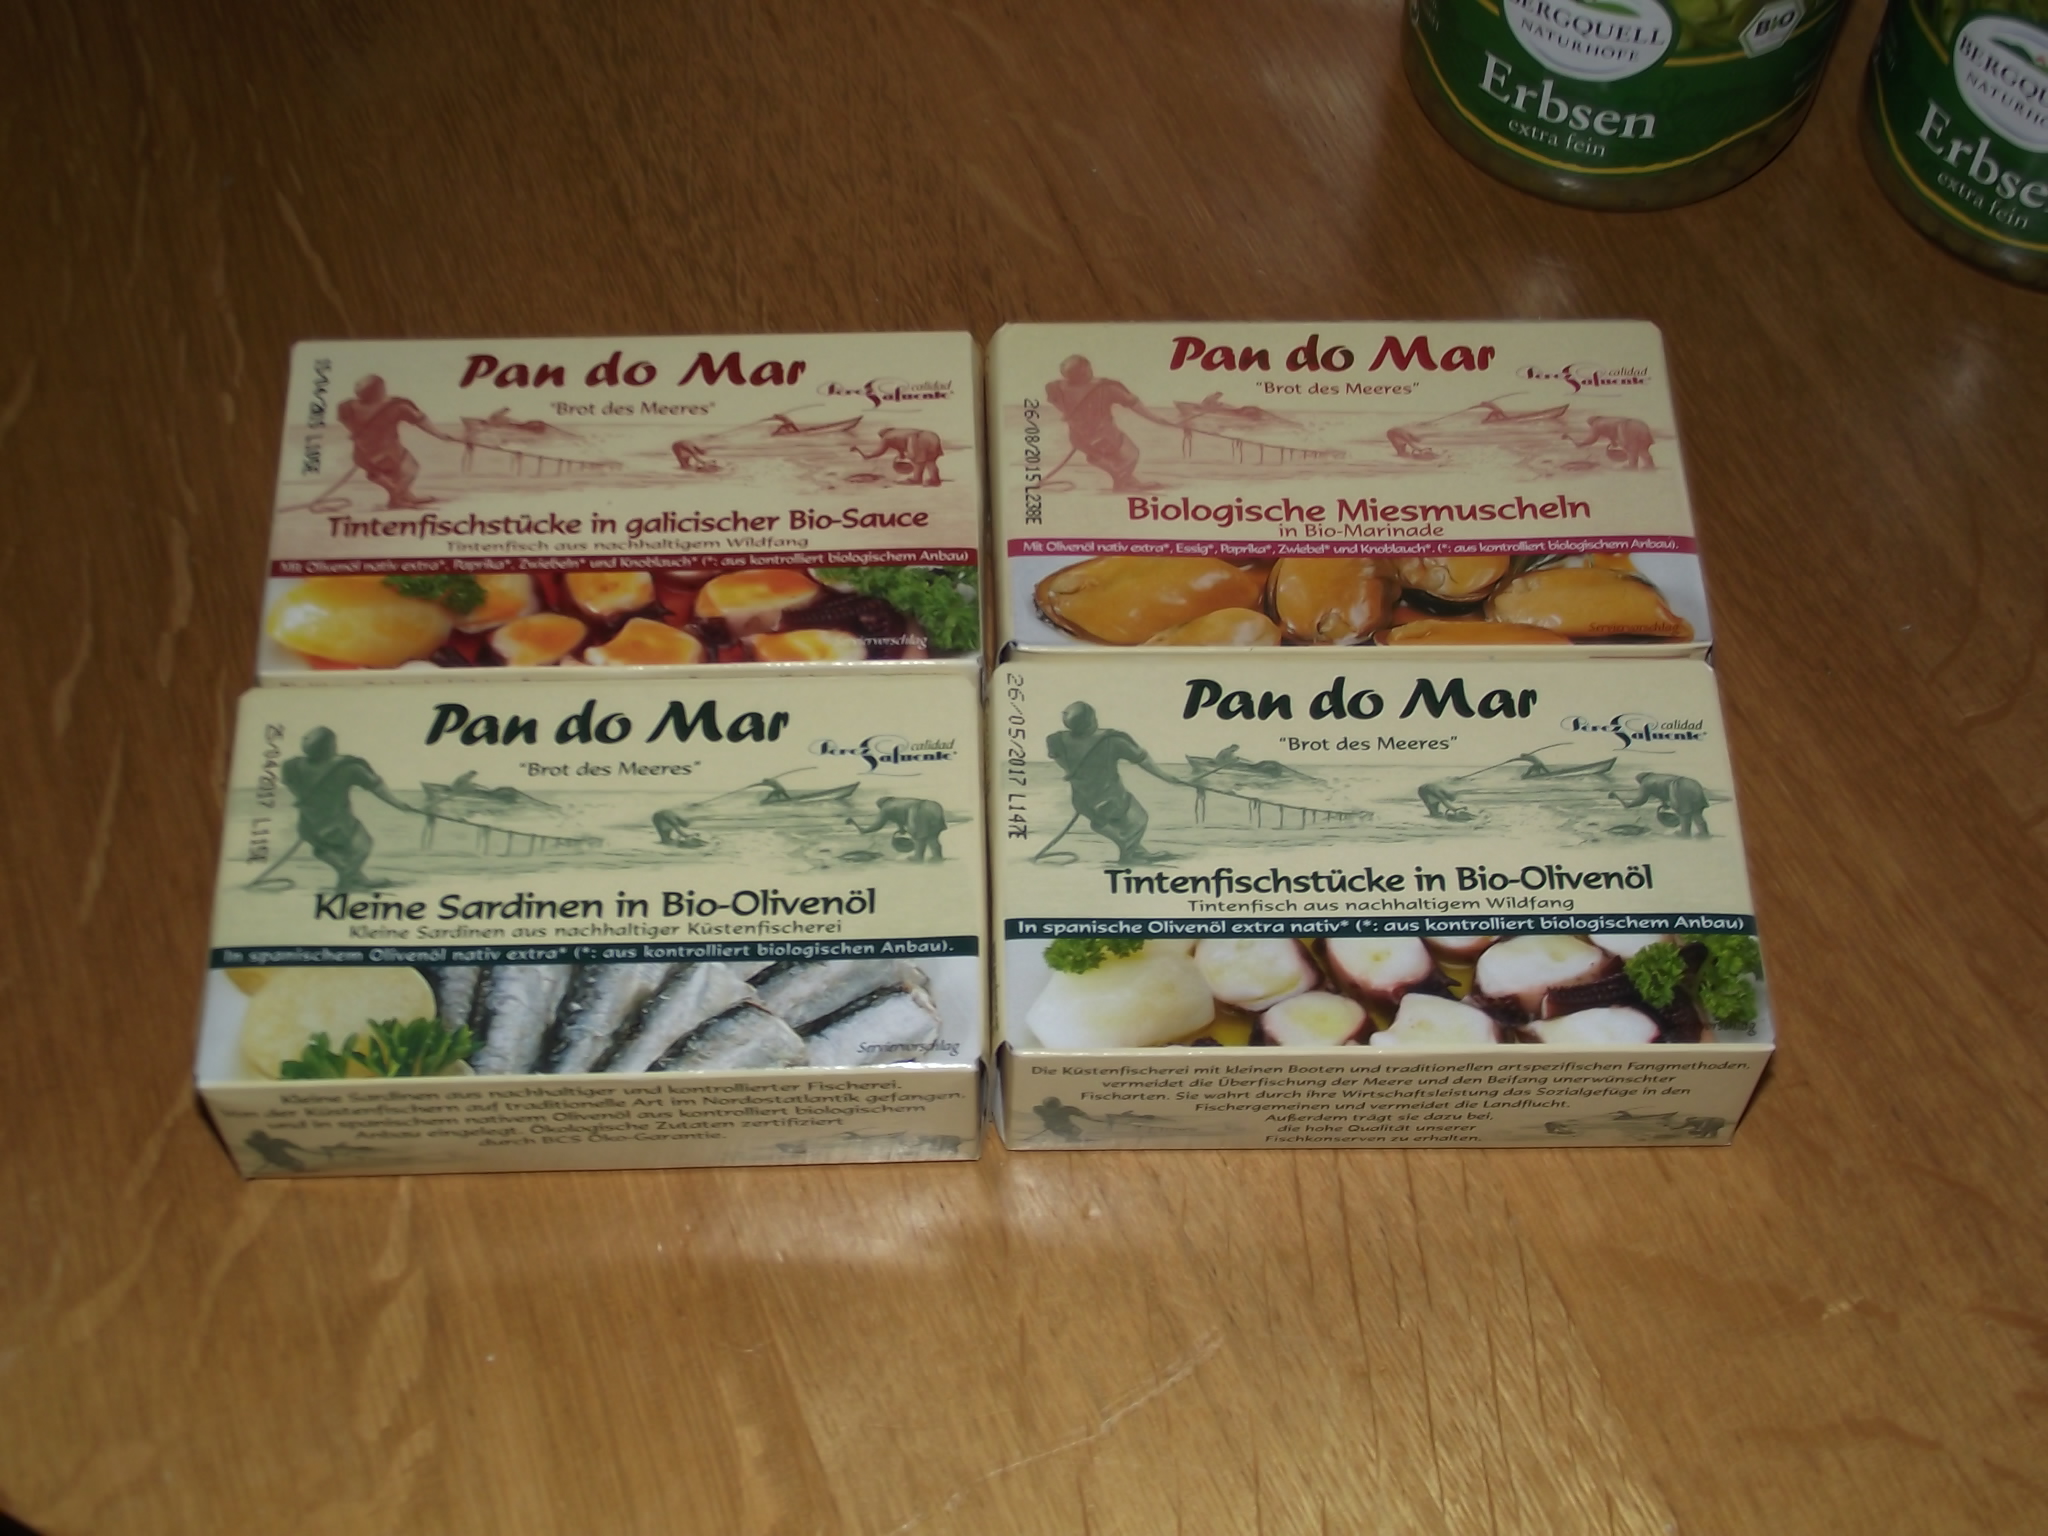 Amorebio ist mein zukünftiger Lieferant für Pan do Mar - Brot des Meeres Fischkonserven